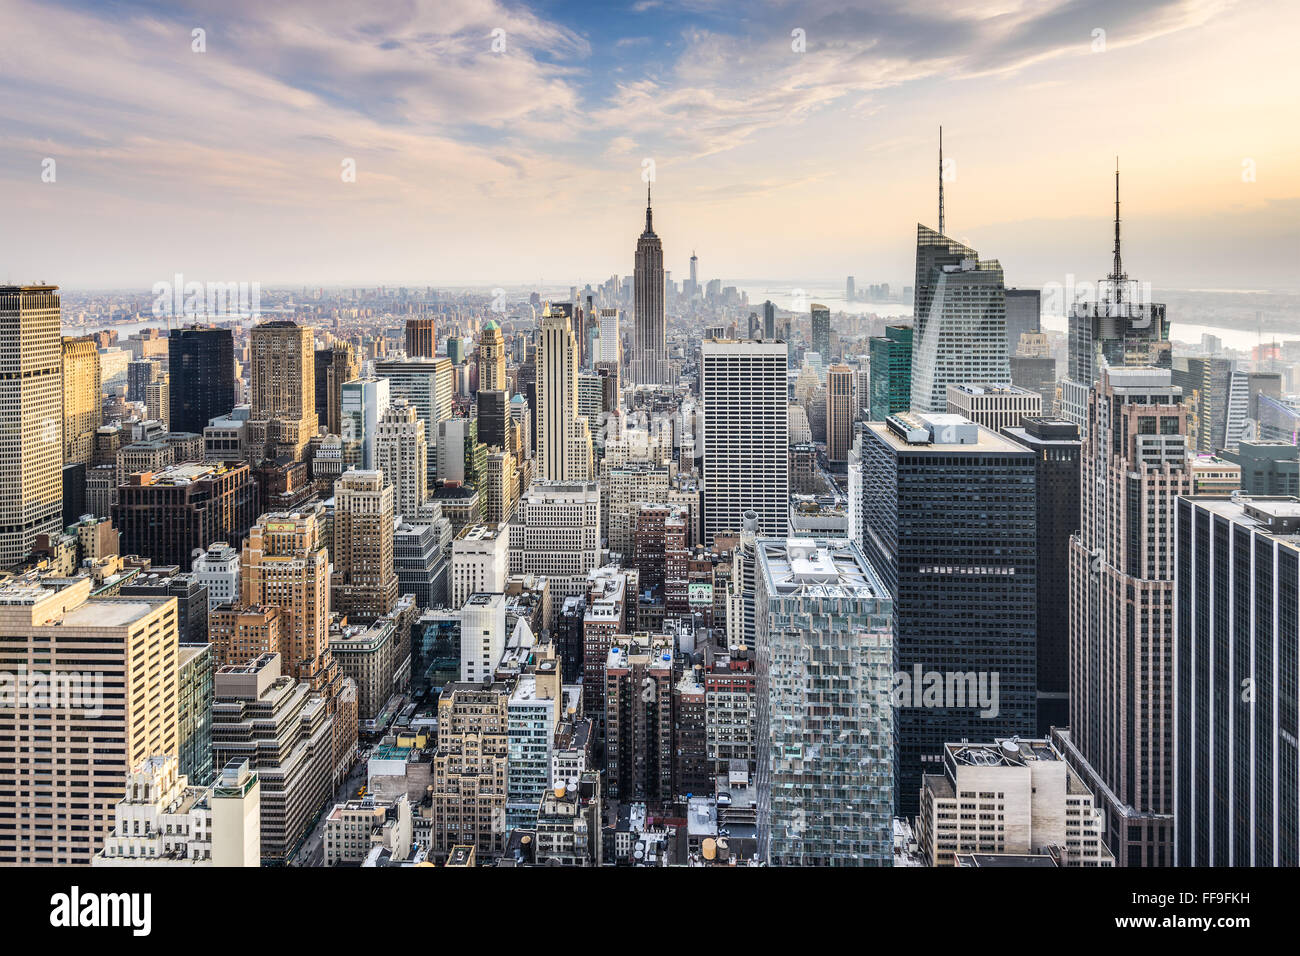 La Ciudad de Nueva York, EE.UU., el distrito financiero de Manhattan skyline. Foto de stock